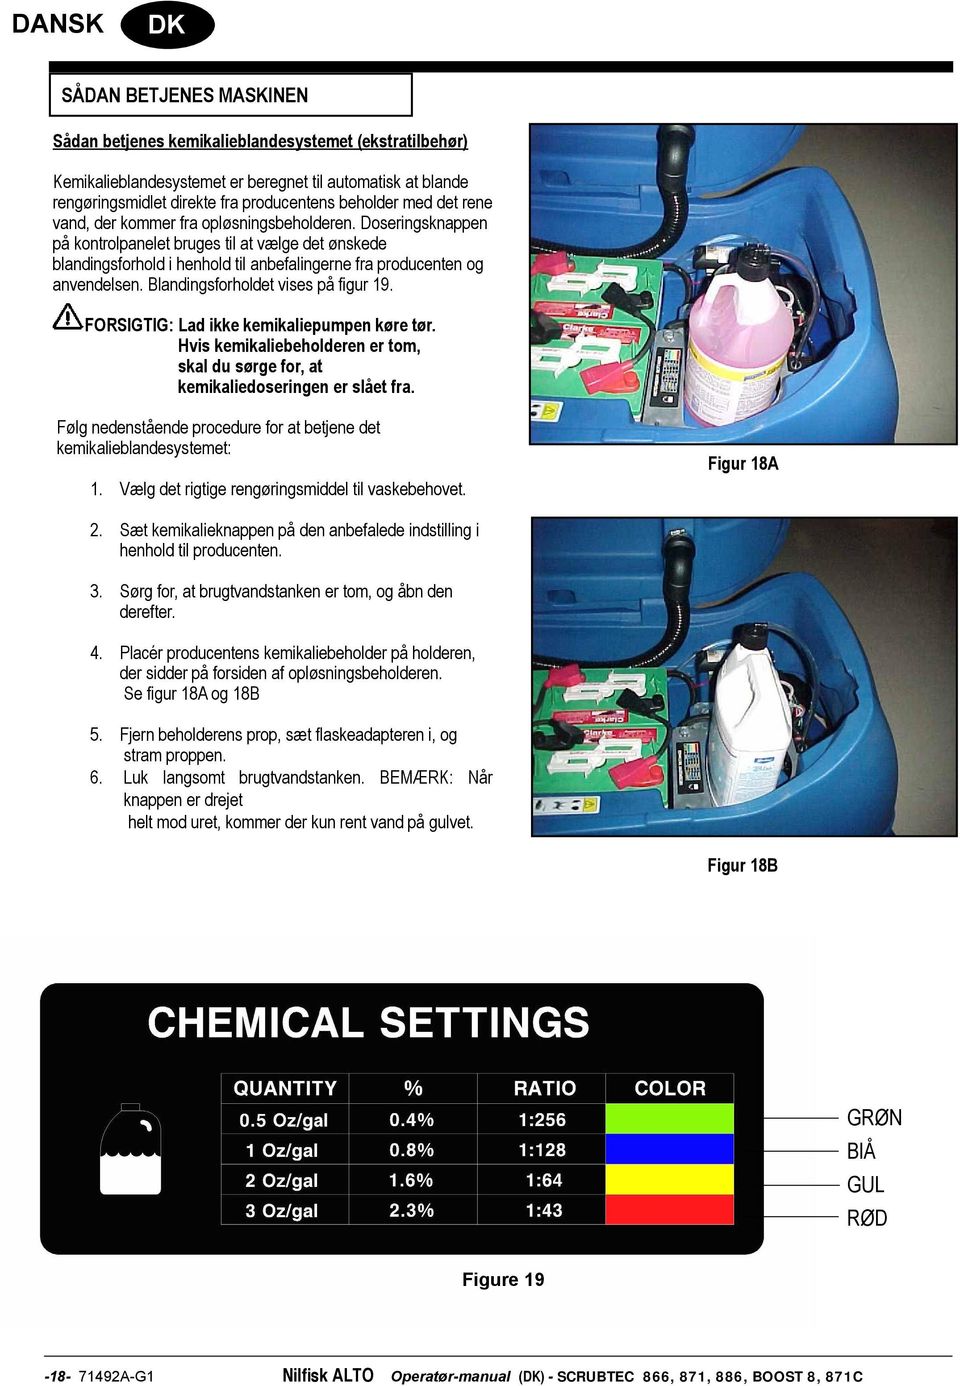 Doseringsknappen på kontrolpanelet bruges til at vælge det ønskede blandingsforhold i henhold til anbefalingerne fra producenten og anvendelsen. Blandingsforholdet vises på figur 19.